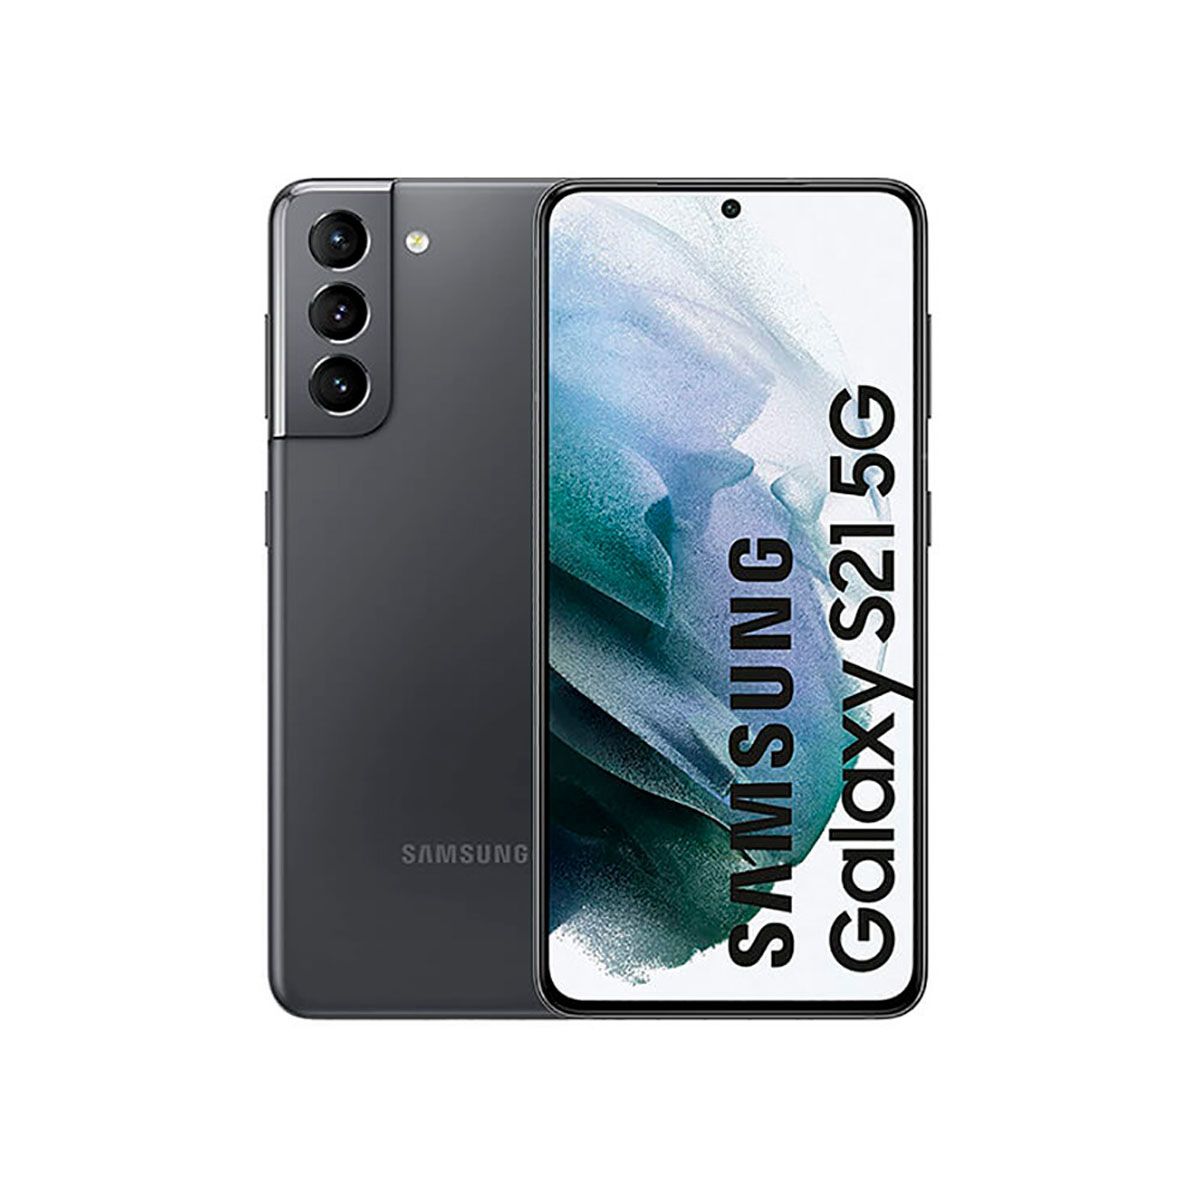 Samsung Galaxy S21 5G 8GB/128GB Gray (Phantom Gray) Dual SIM G991